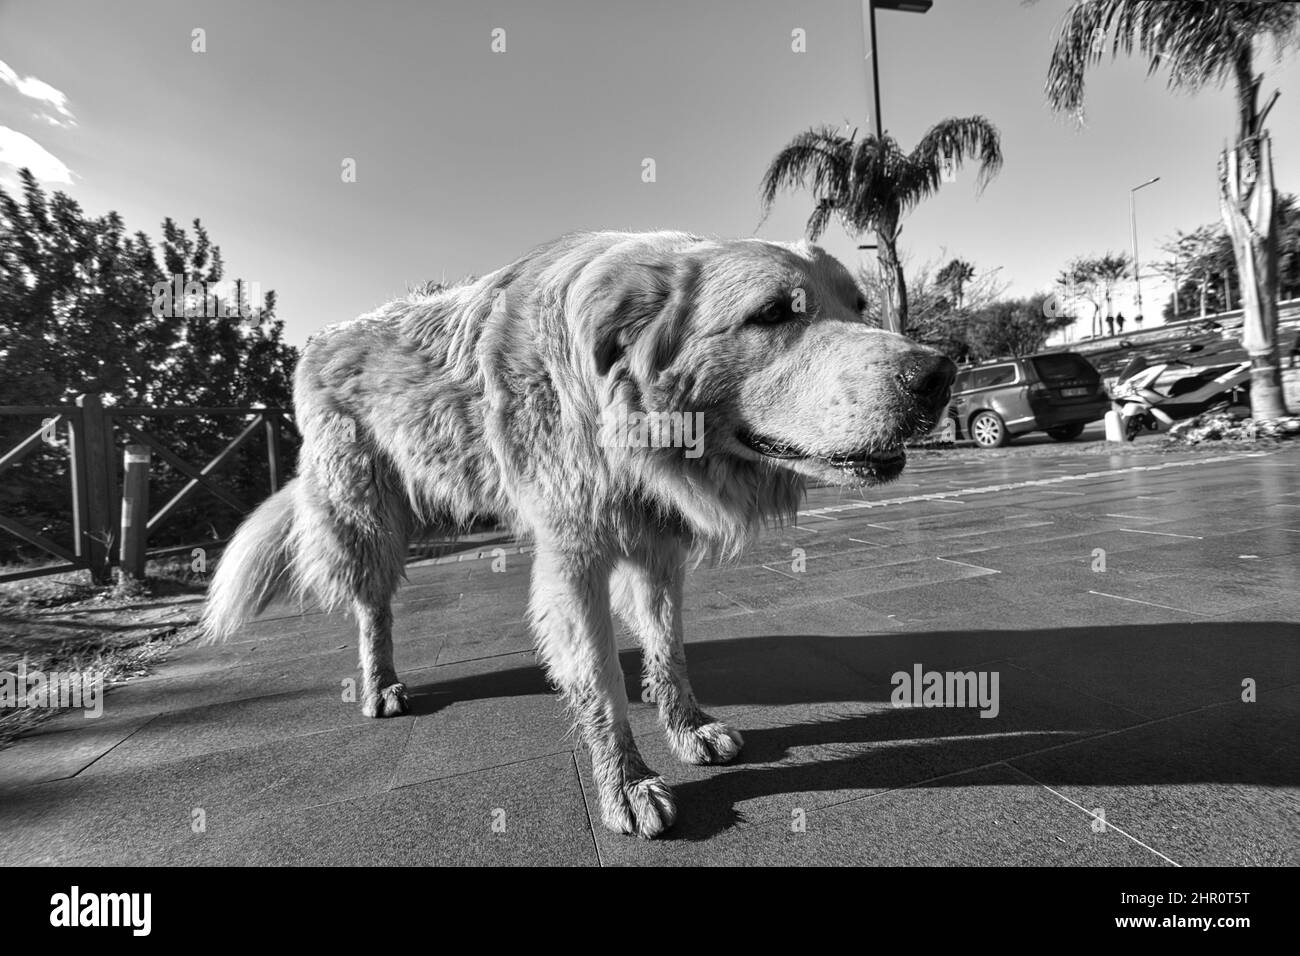 A 3-legged stray dog. Black and White dog photo. Stock Photo